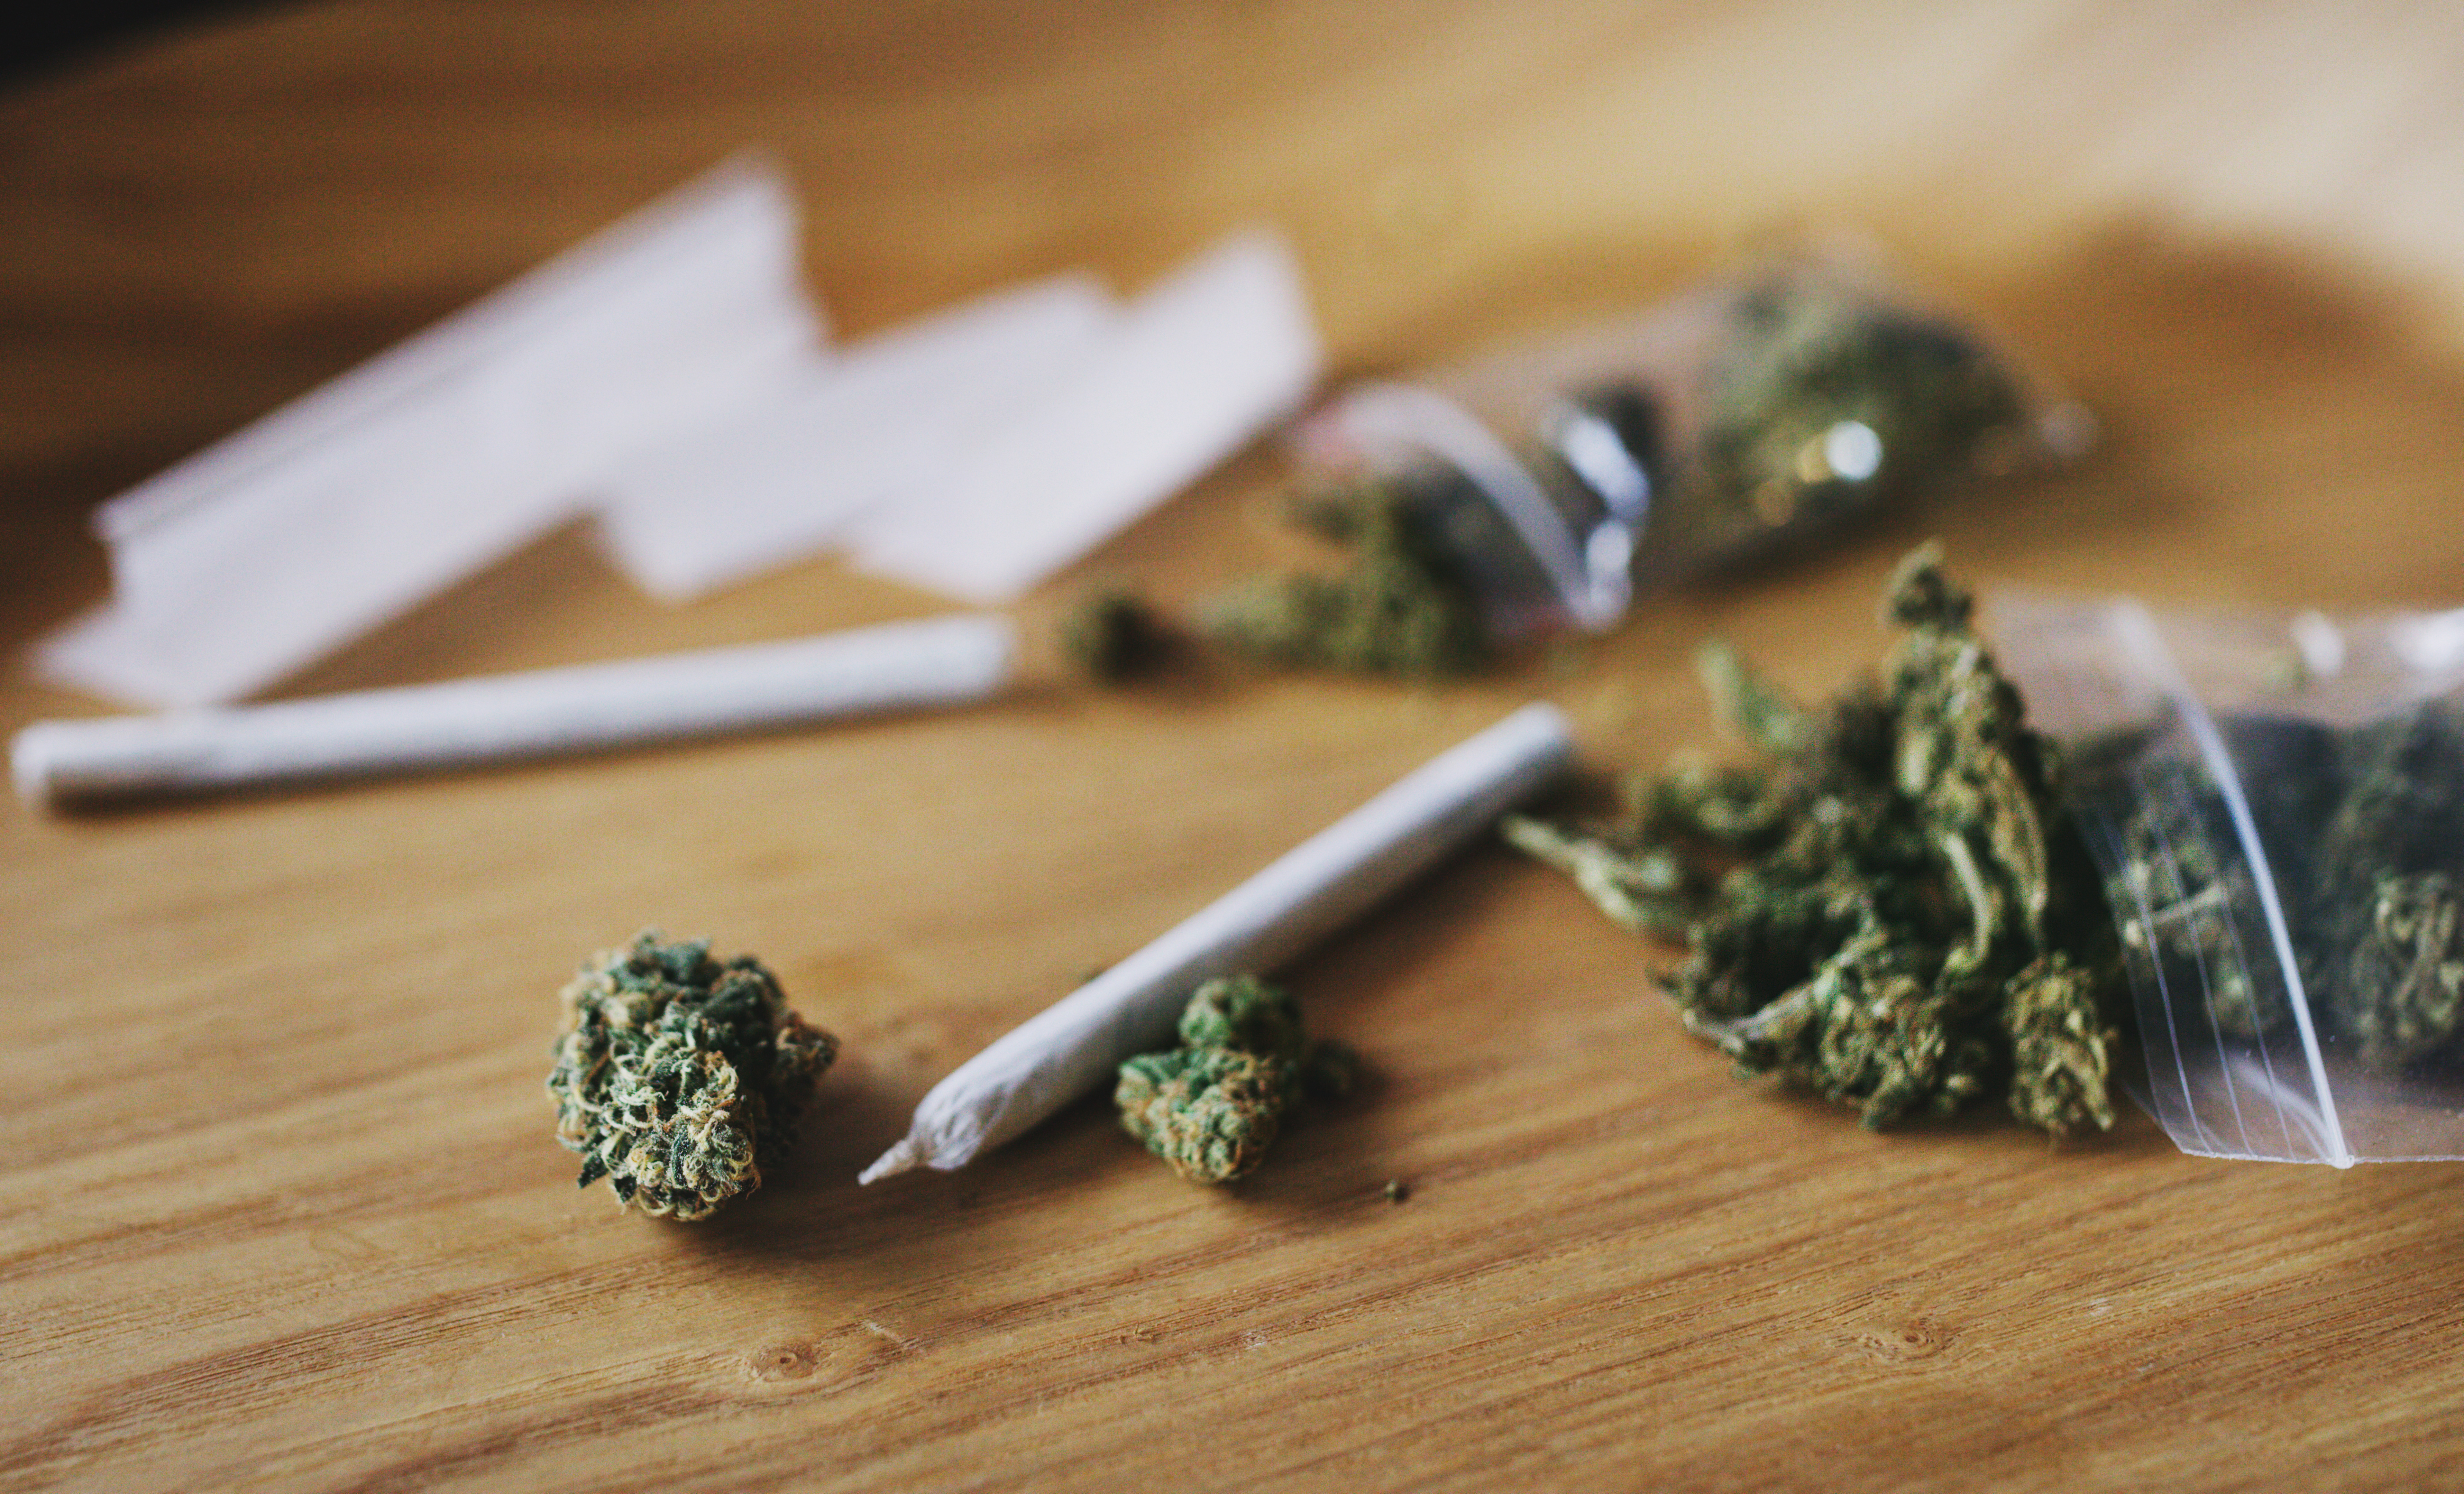 “El cannabis contiene más de 500 sustancias químicas, incluidos más de 140 cannabinoides que tienen un mayor o menor grado de actividad psicofarmacológica”, explicó Hurd